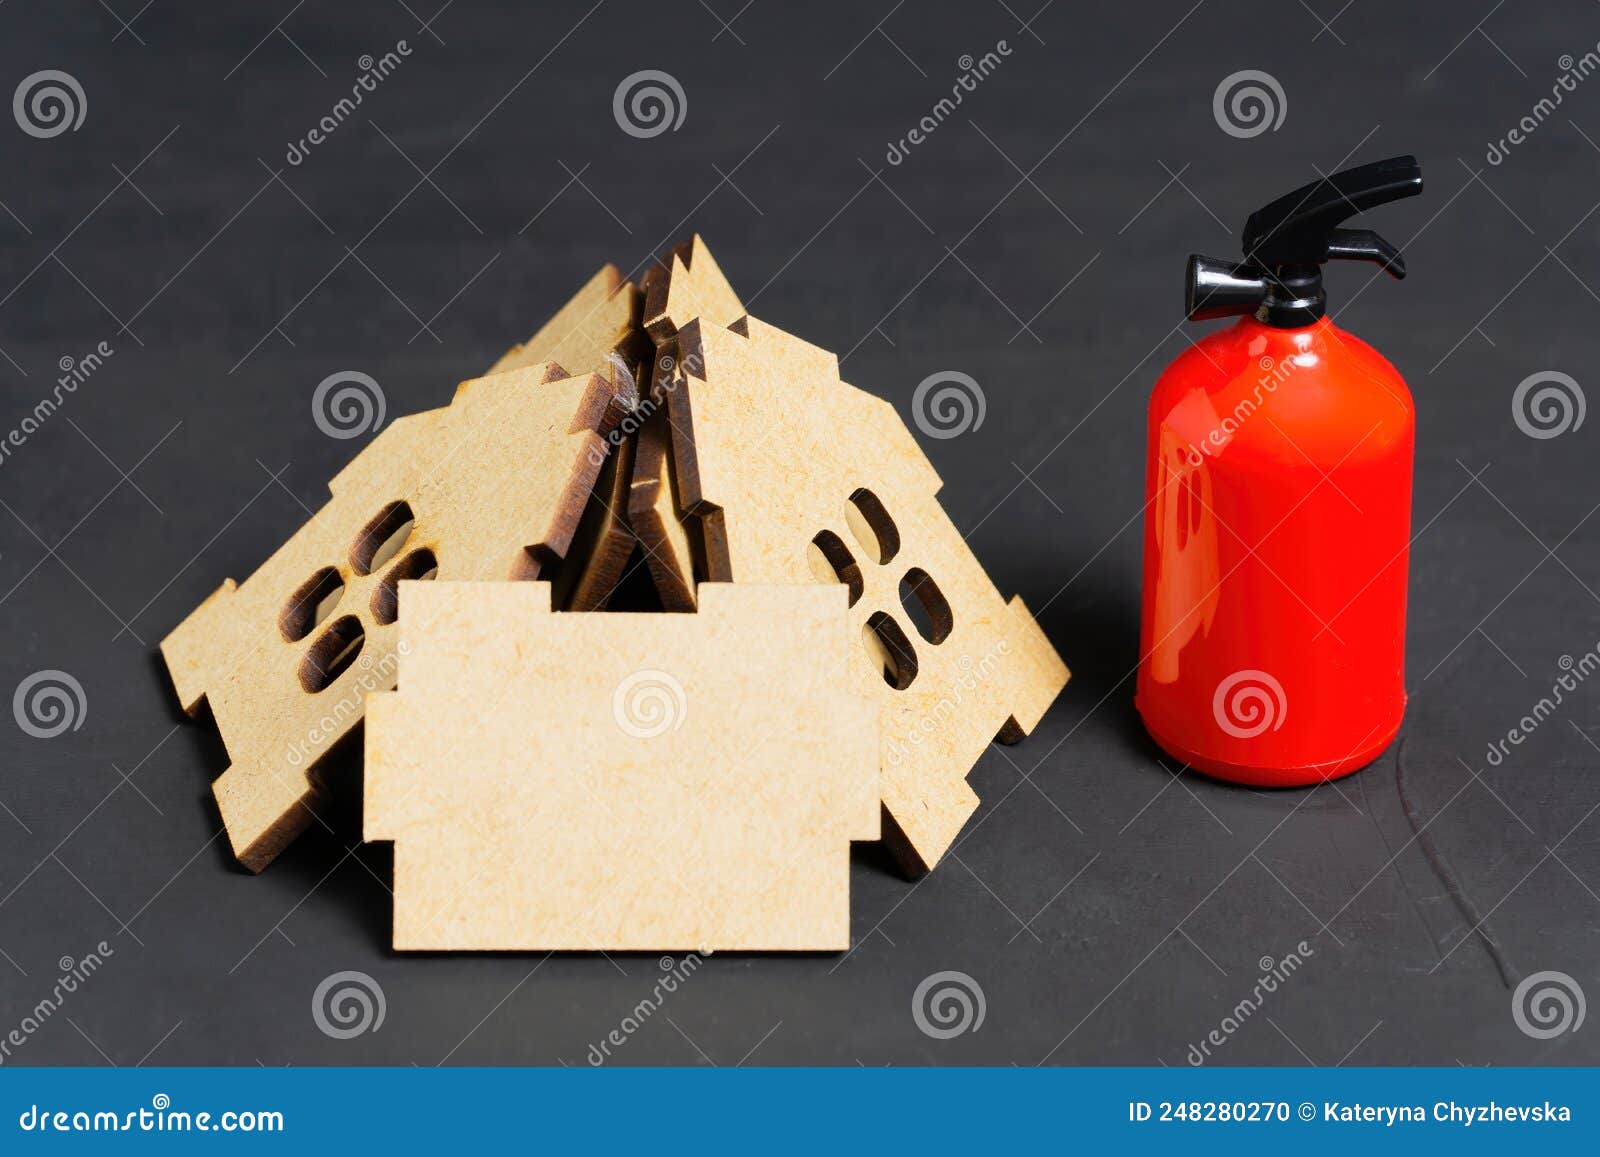 Extinguidor De Incendios Por Una Pila De Paneles De La Casa De Juguetes  Foto de archivo - Imagen de vivienda, fuego: 248280270